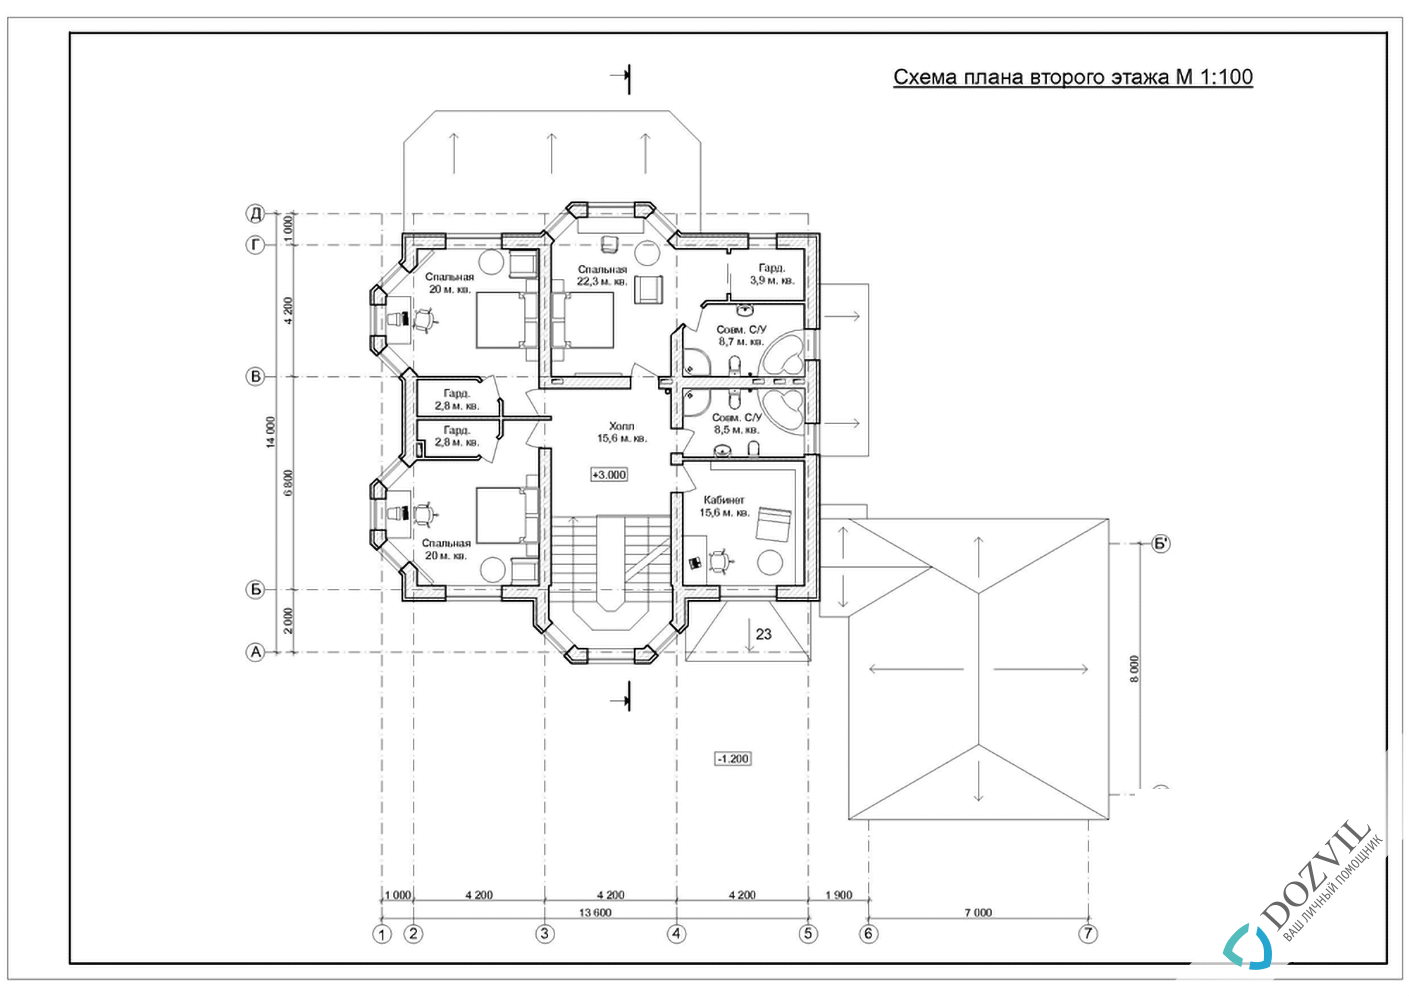 Разрешение на строительство> Дома с общей площадью до 500 квадратных метров > 2 этап - Разработка эскиза намерений строительства